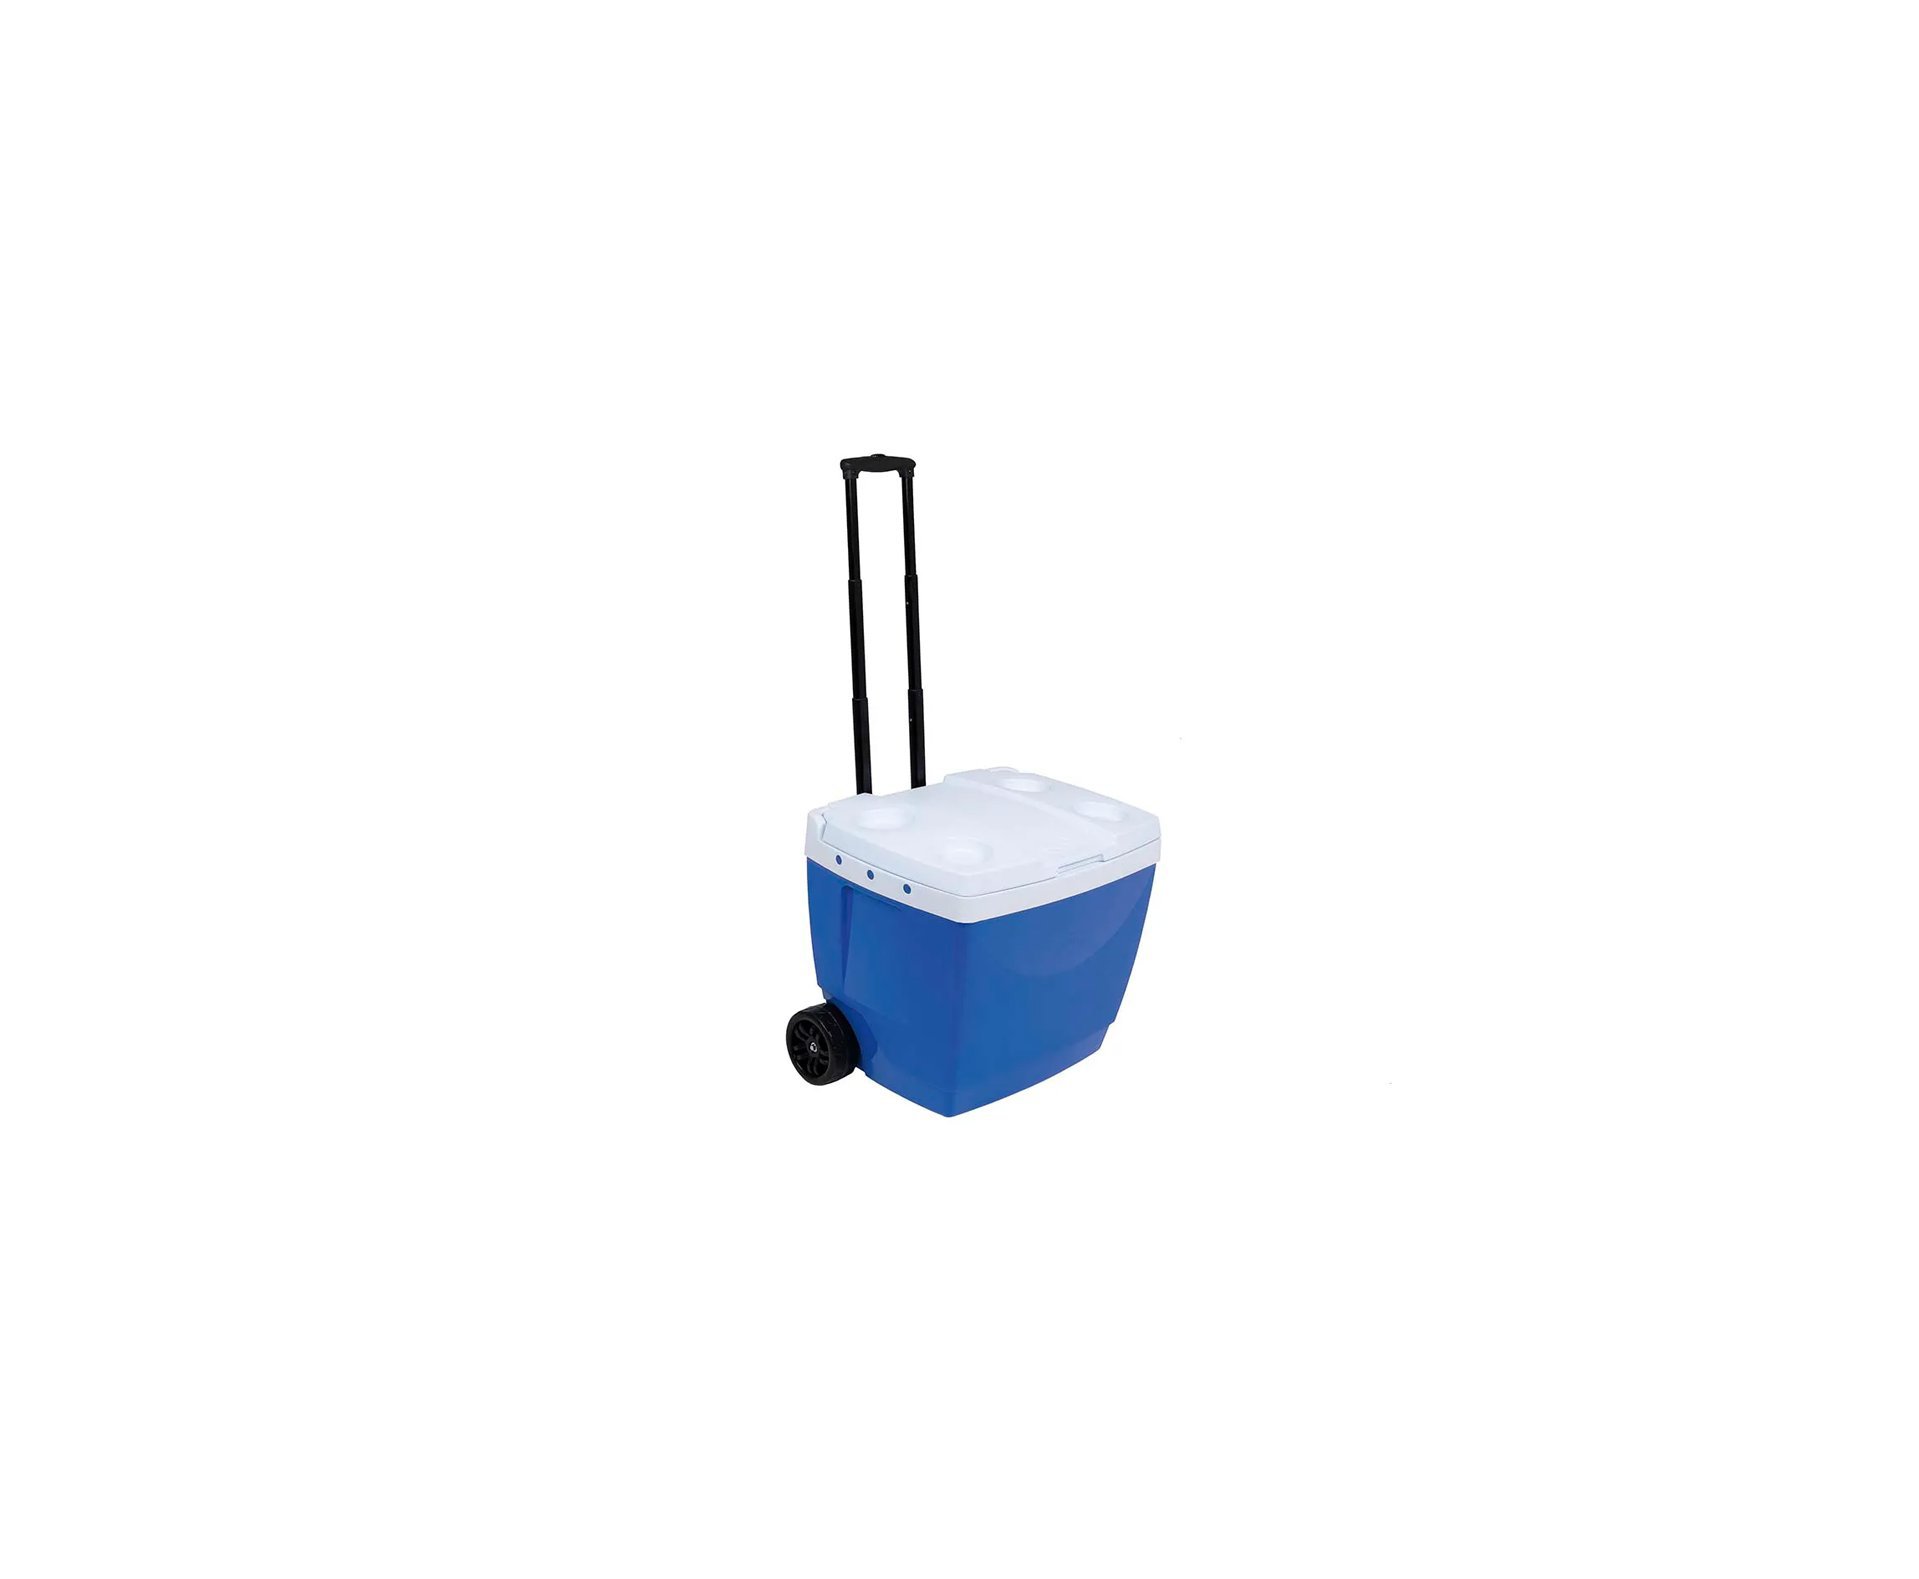 Caixa Térmica Mor 42l Com Roda E Alça Transporte - Azul